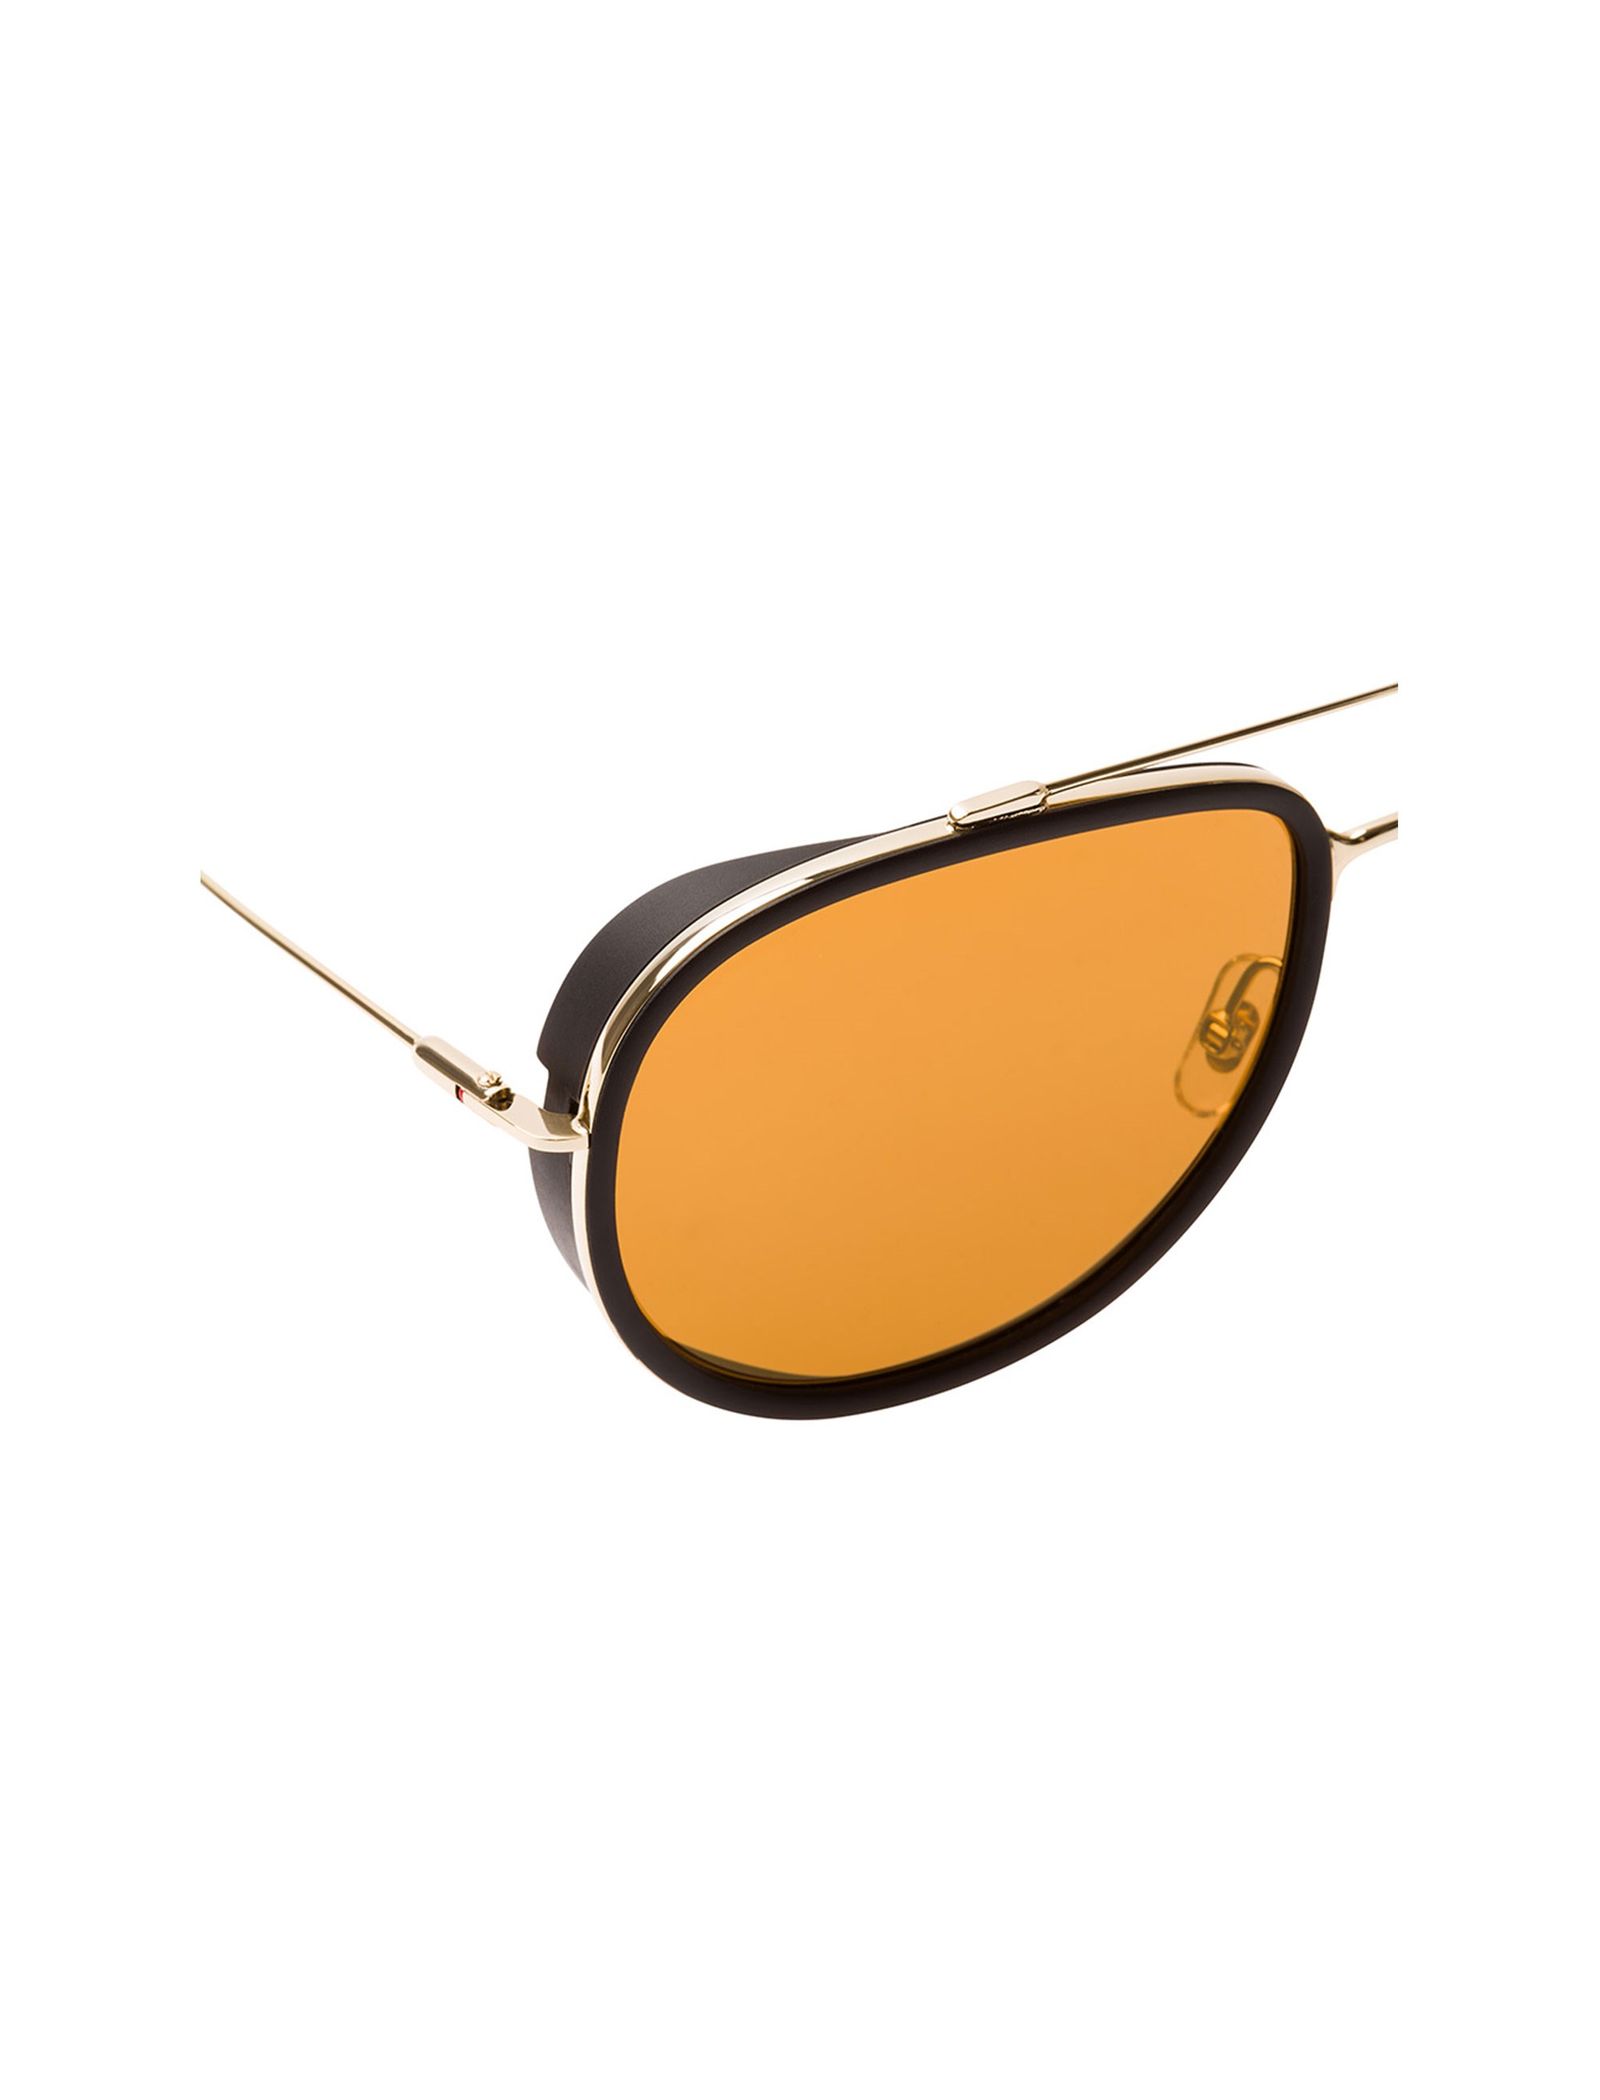 عینک آفتابی خلبانی بزرگسال - کاررا - طلايي - 3